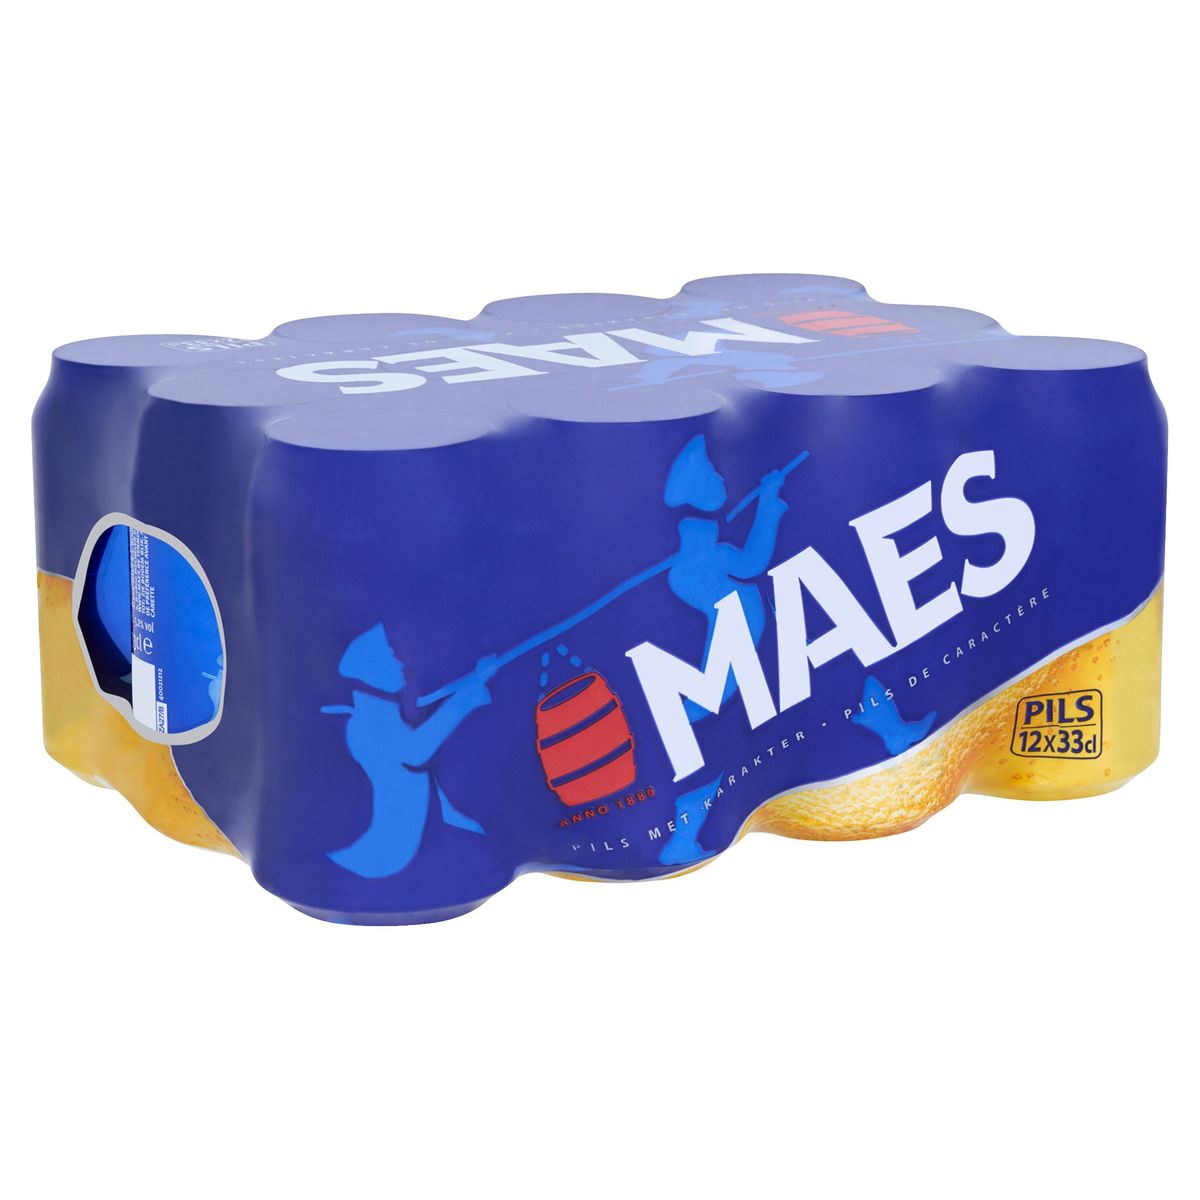 Maes Blond bier Pils 5.2% ALC 12 x 33 cl Blik